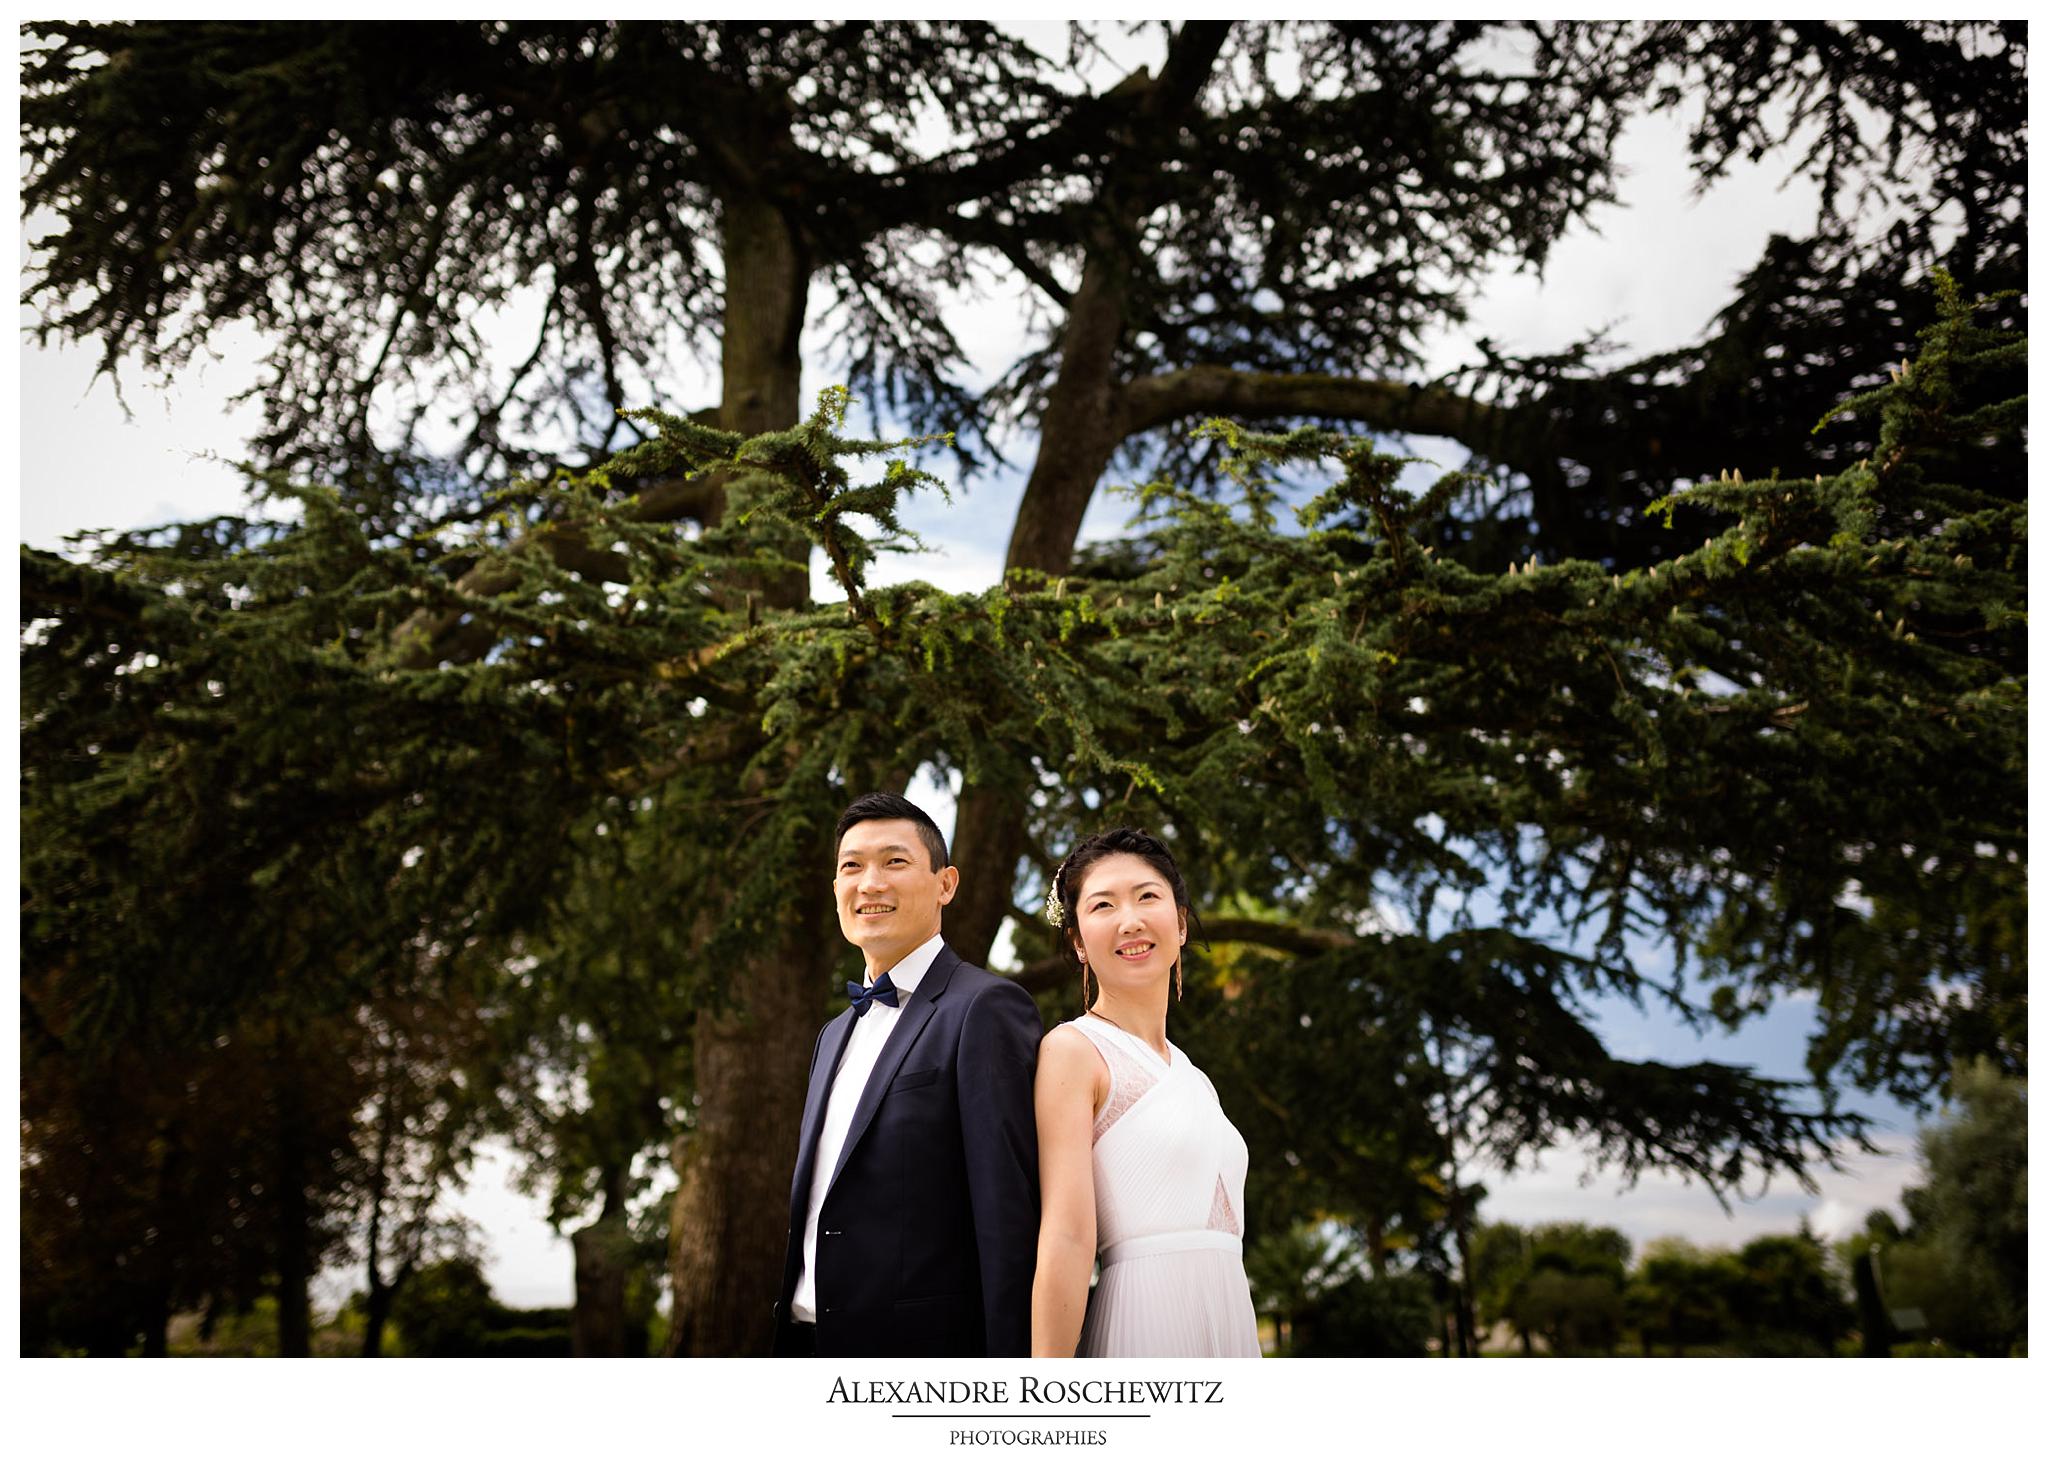 Les photos des fiançailles de Q+Z au Chateau Pape Clement à Pessac, avant leur prochain mariage. Alexandre Roschewitz Photographies